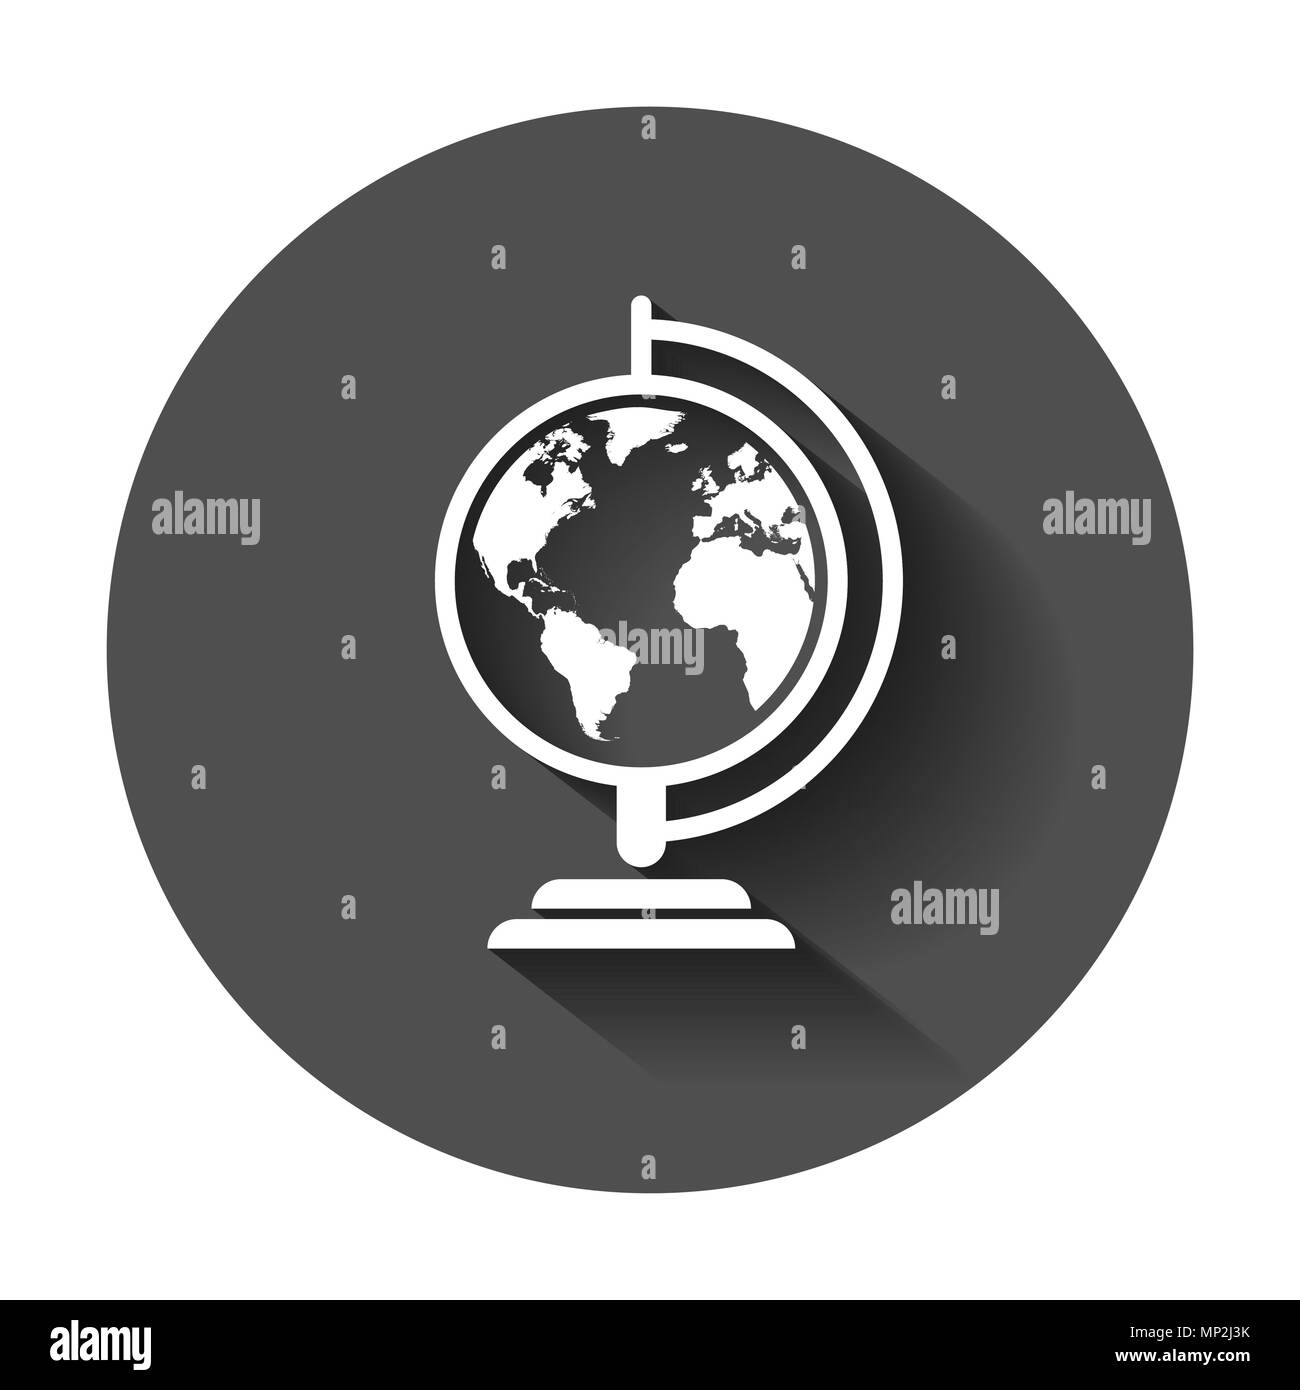 Globe World Map Vektor icon. Runde Erde flach Vector Illustration. Planet Geschäftskonzept Piktogramm mit langen Schatten. Stock Vektor